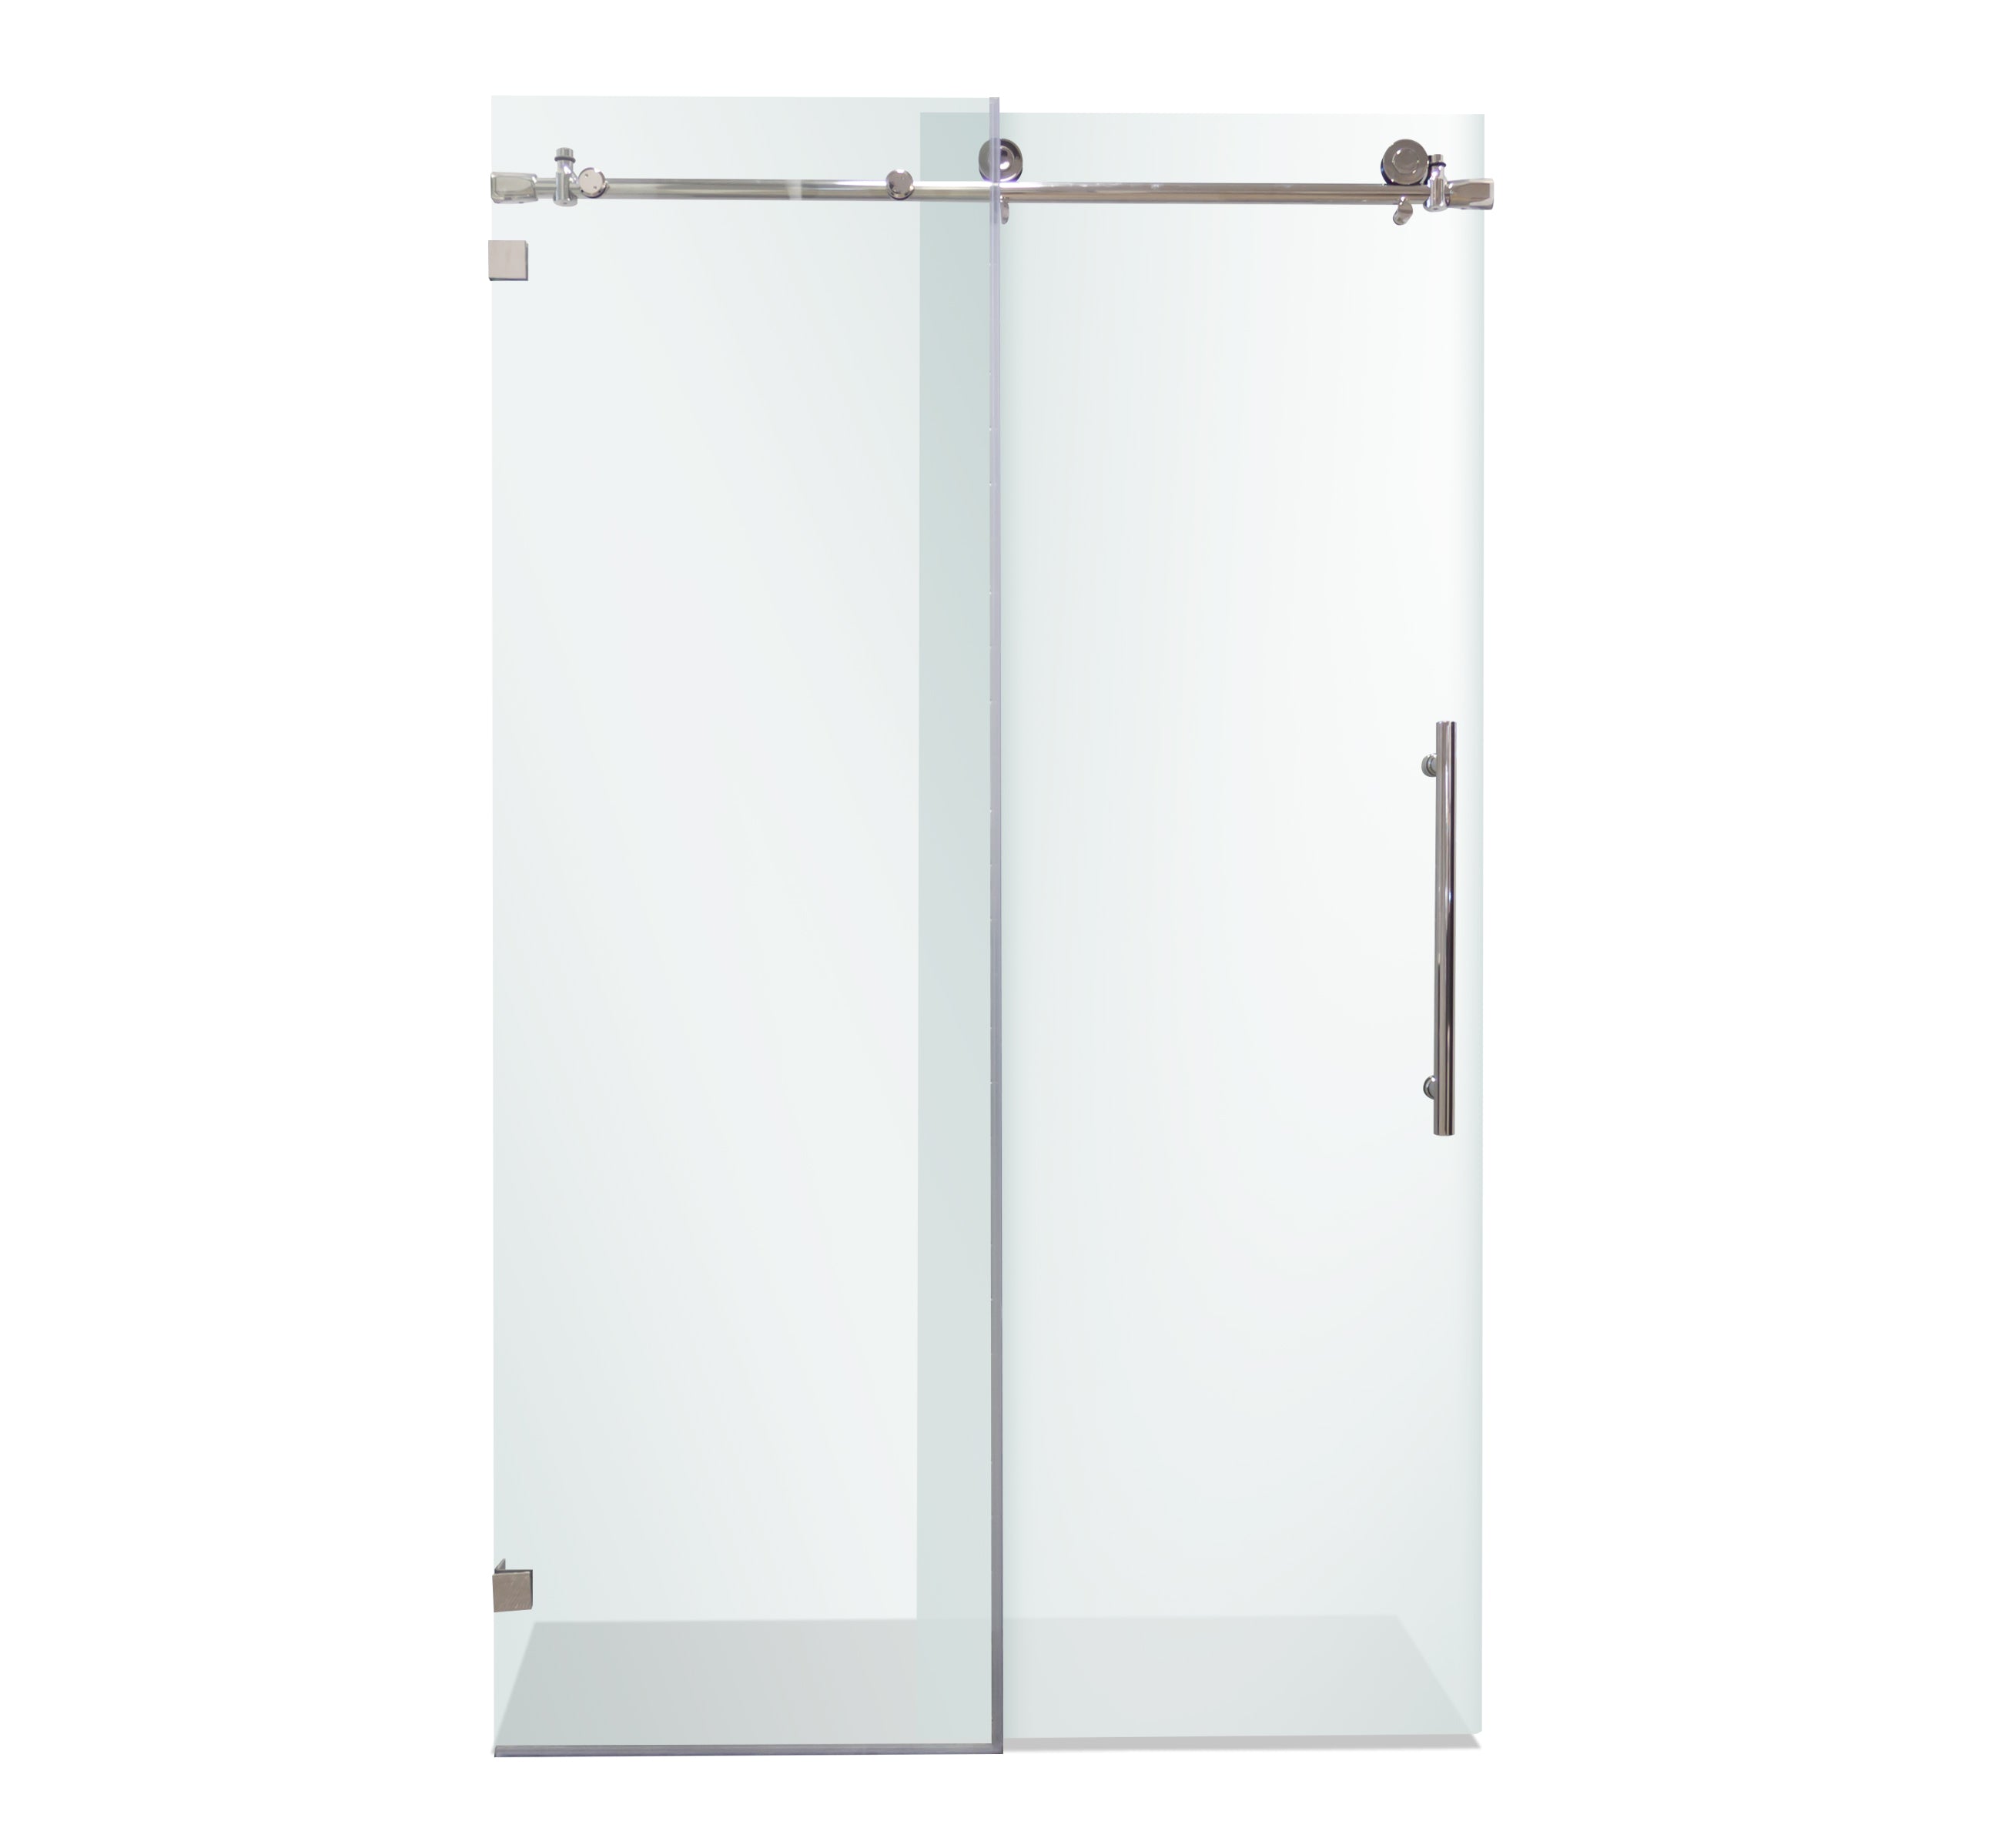 Shower Door Set 1 with glass sliding door #color_chrome